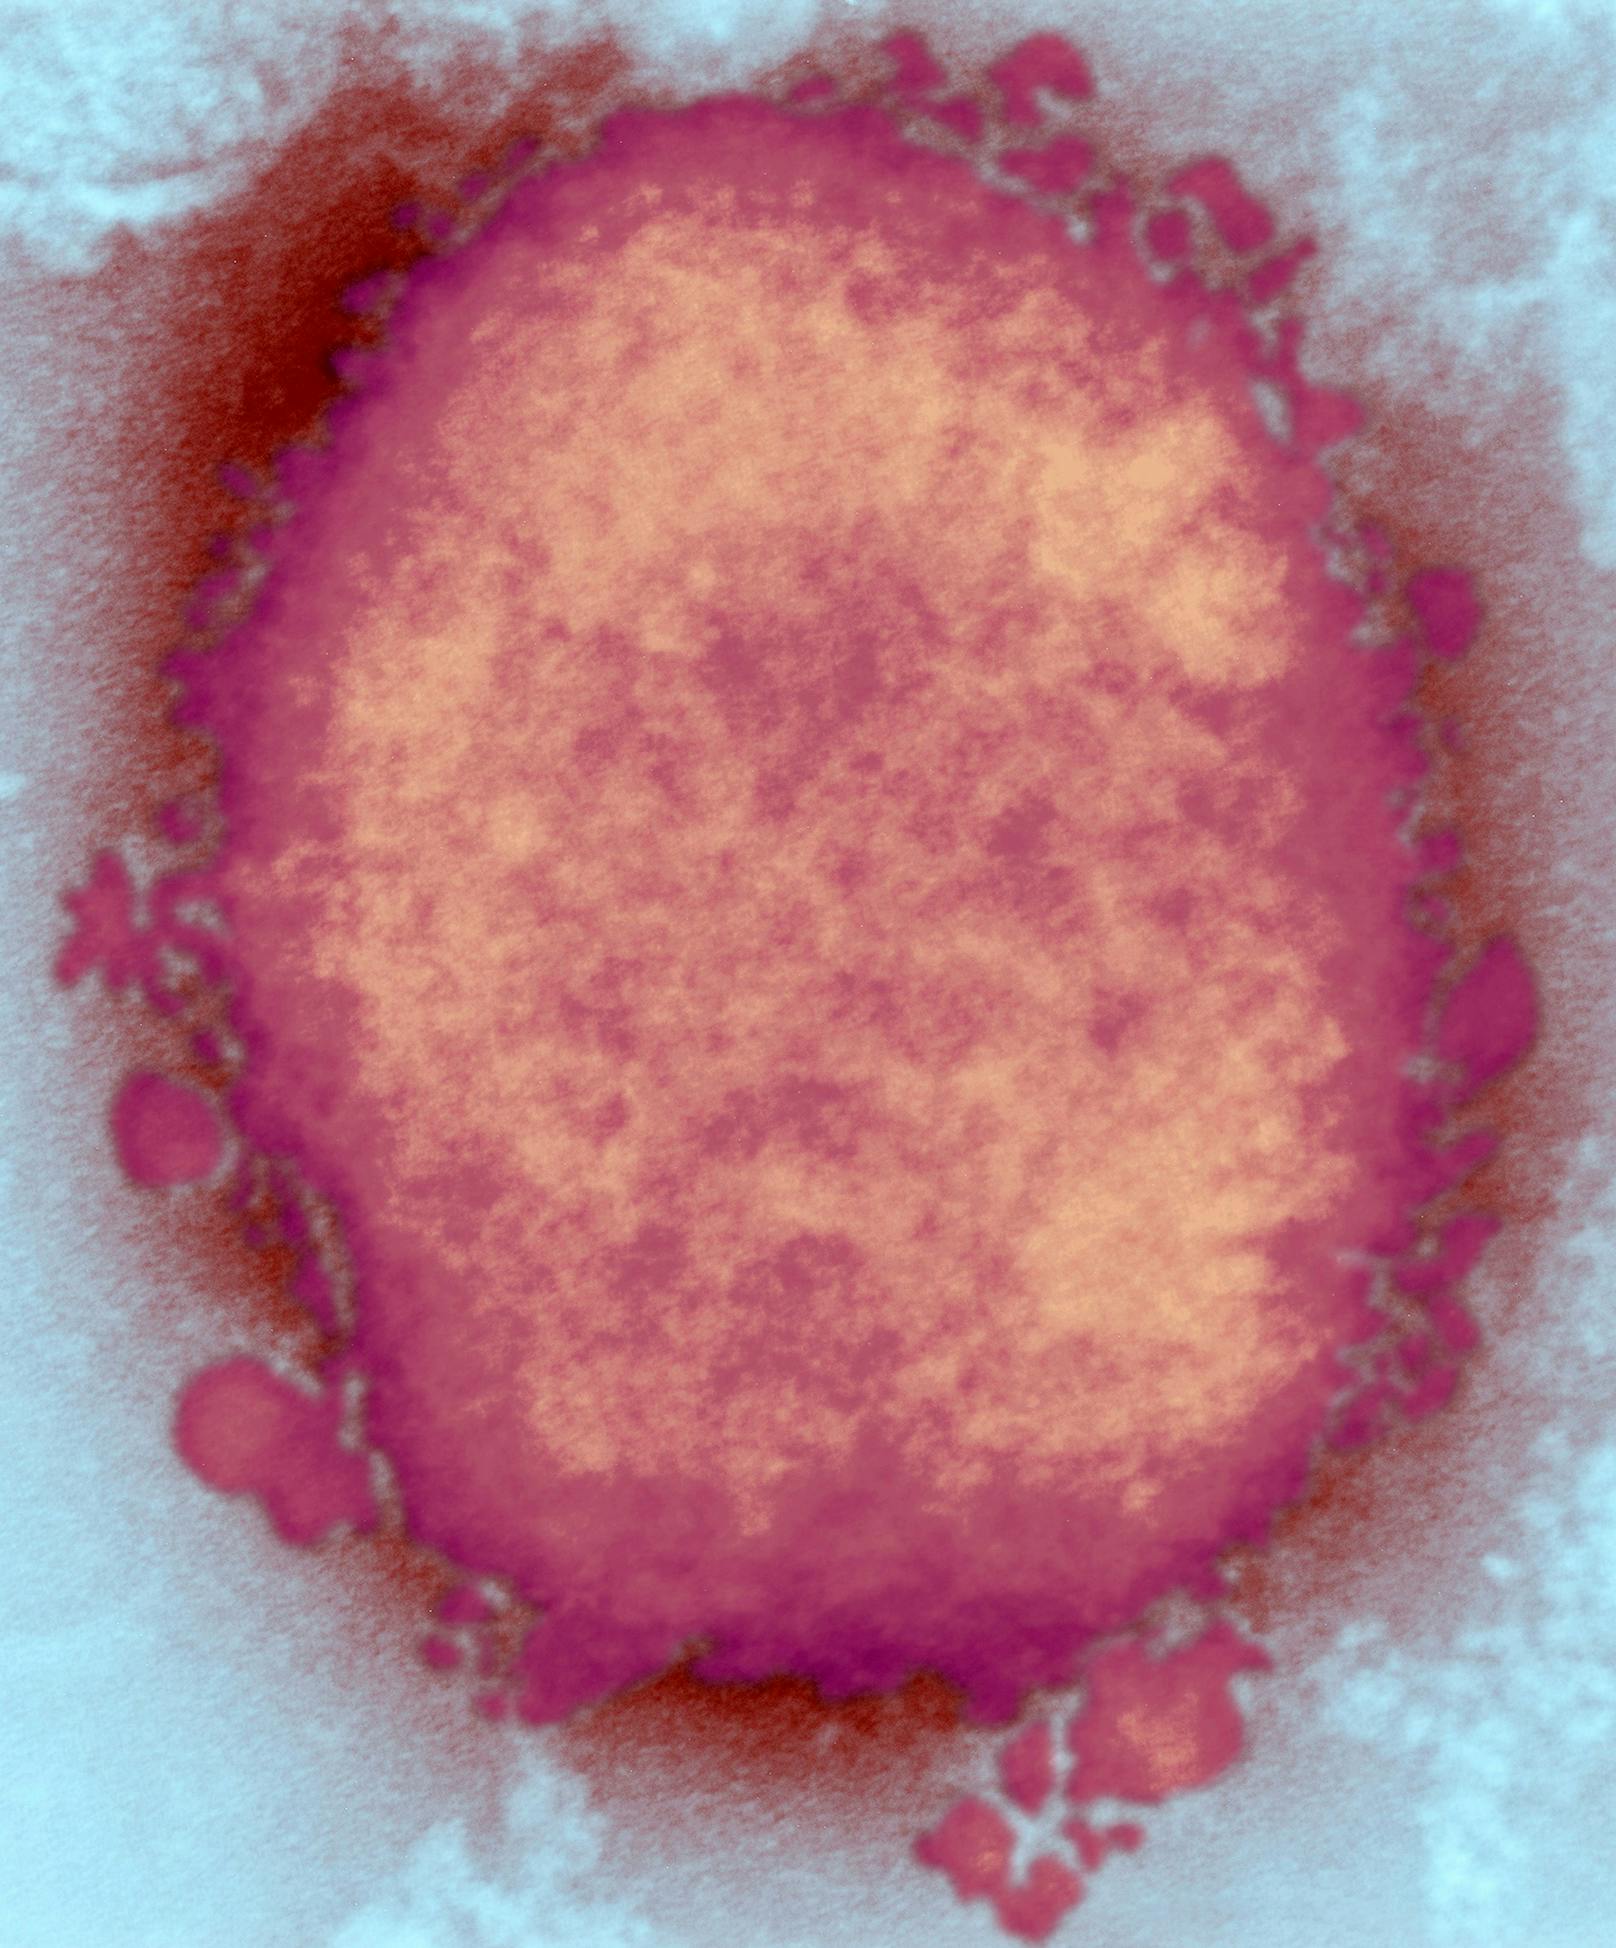 Affenpocken sind ein Pockenvirus, das 1958 bei Cynomolgus-Affen und 1970 beim Menschen nachgewiesen wurde. Das Virus besteht aus einem DNA-Kern in einer Proteinhülle, das von einer Hülle umgeben ist. Affenpocken sind zoonotisch, d.h. sie werden von Tieren (z. B. Nagetieren) auf den Menschen übertragen und umgekehrt. Infektionen beim Menschen werden häufig durch Tierbisse oder durch direkten Kontakt mit infizierten Körperflüssigkeiten verursacht. (im Bild: Partikel des Affenpockenvirus)